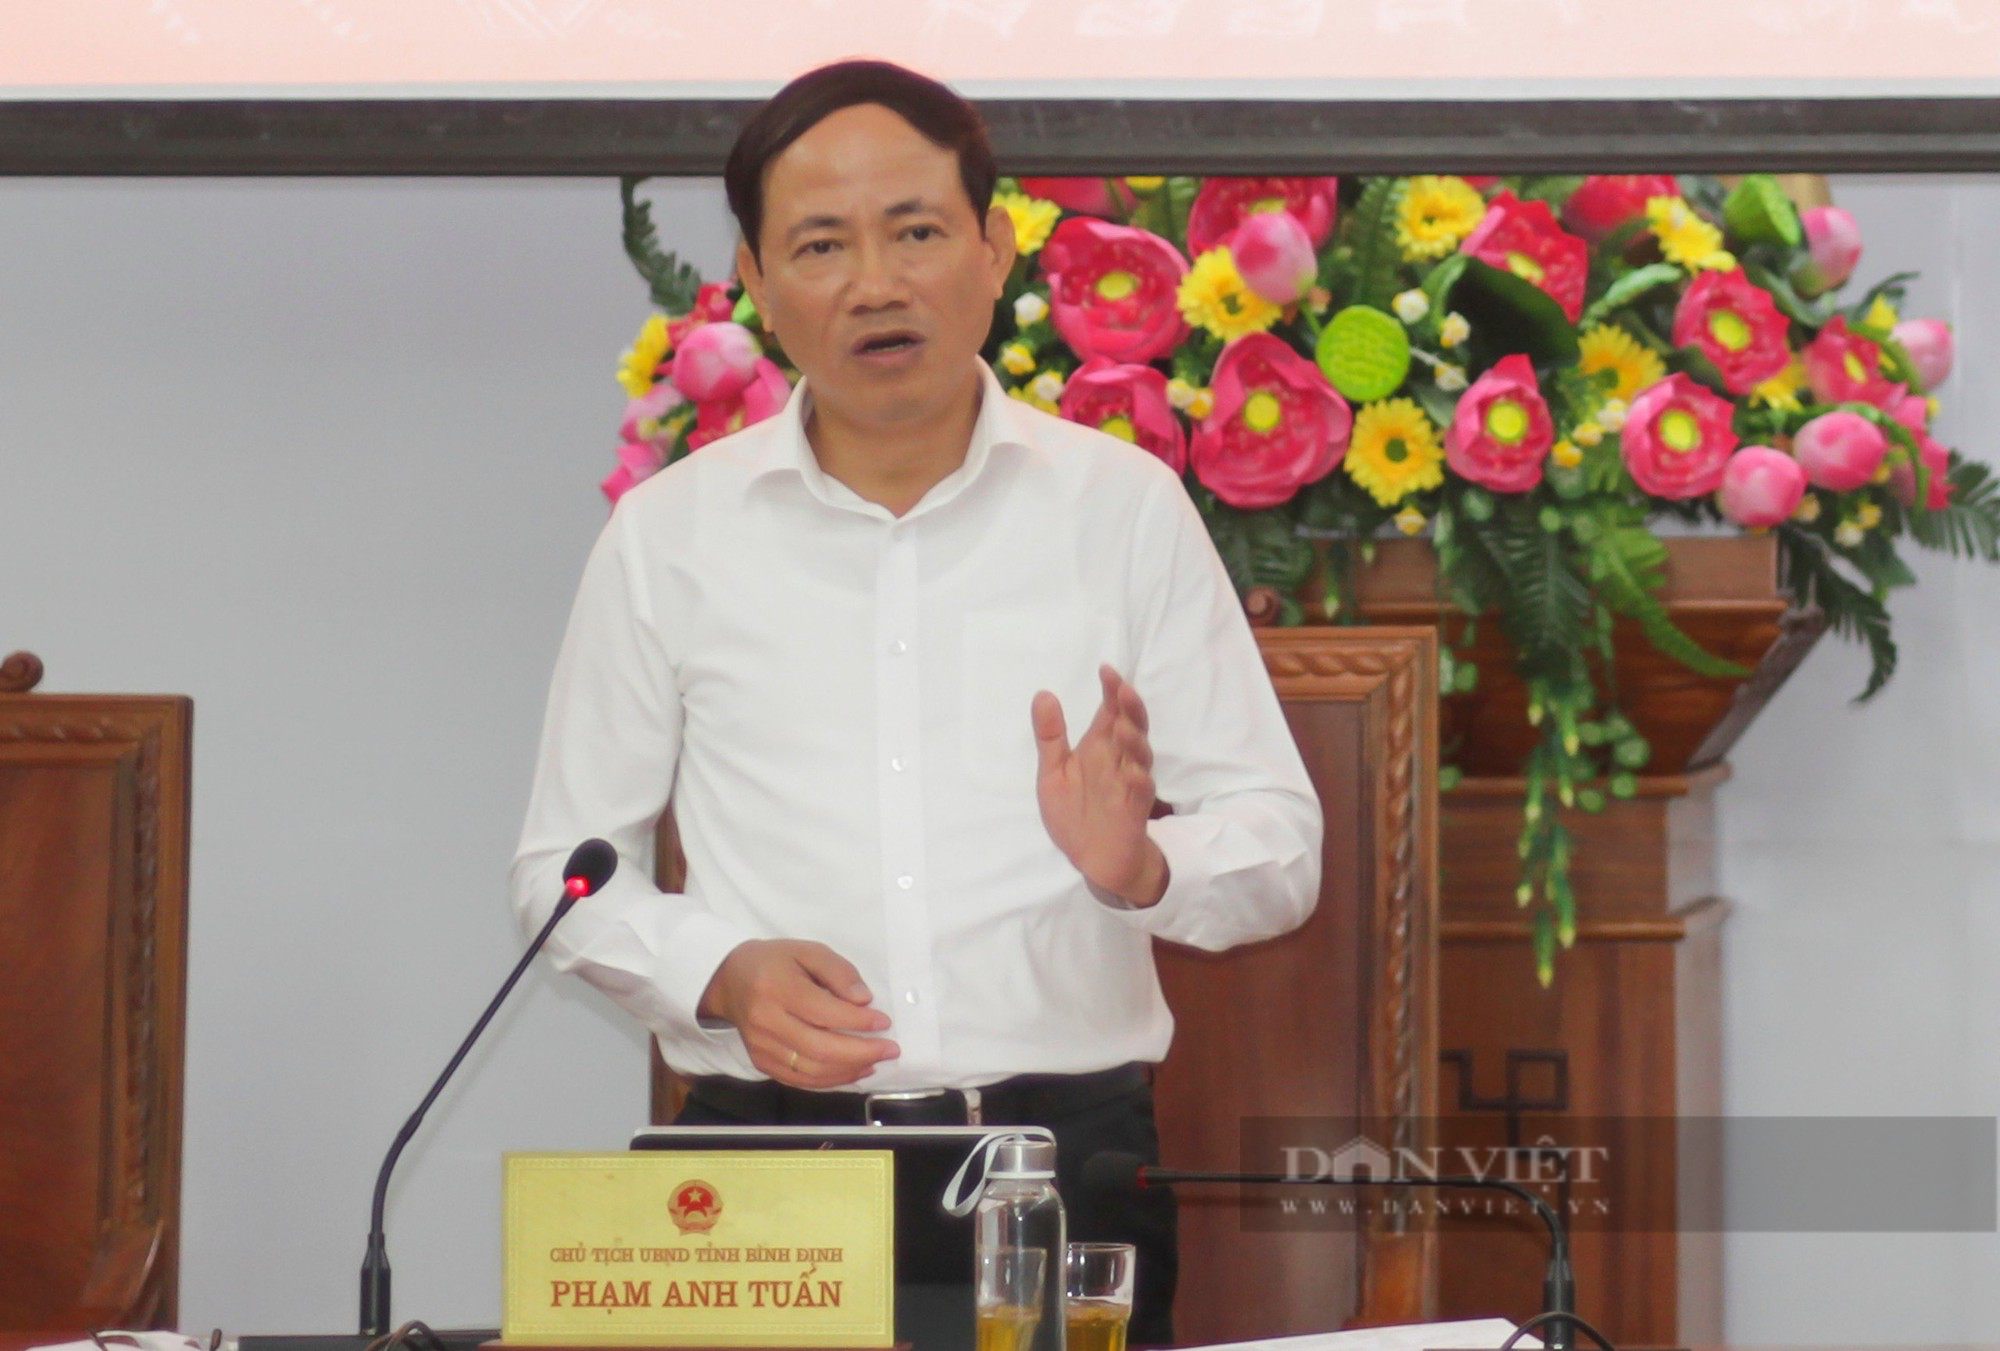 Chủ tịch tỉnh Bình Định Phạm Anh Tuấn kiểm tra nhà xây trái phép của cựu Giám đốc Sở - Ảnh 1.